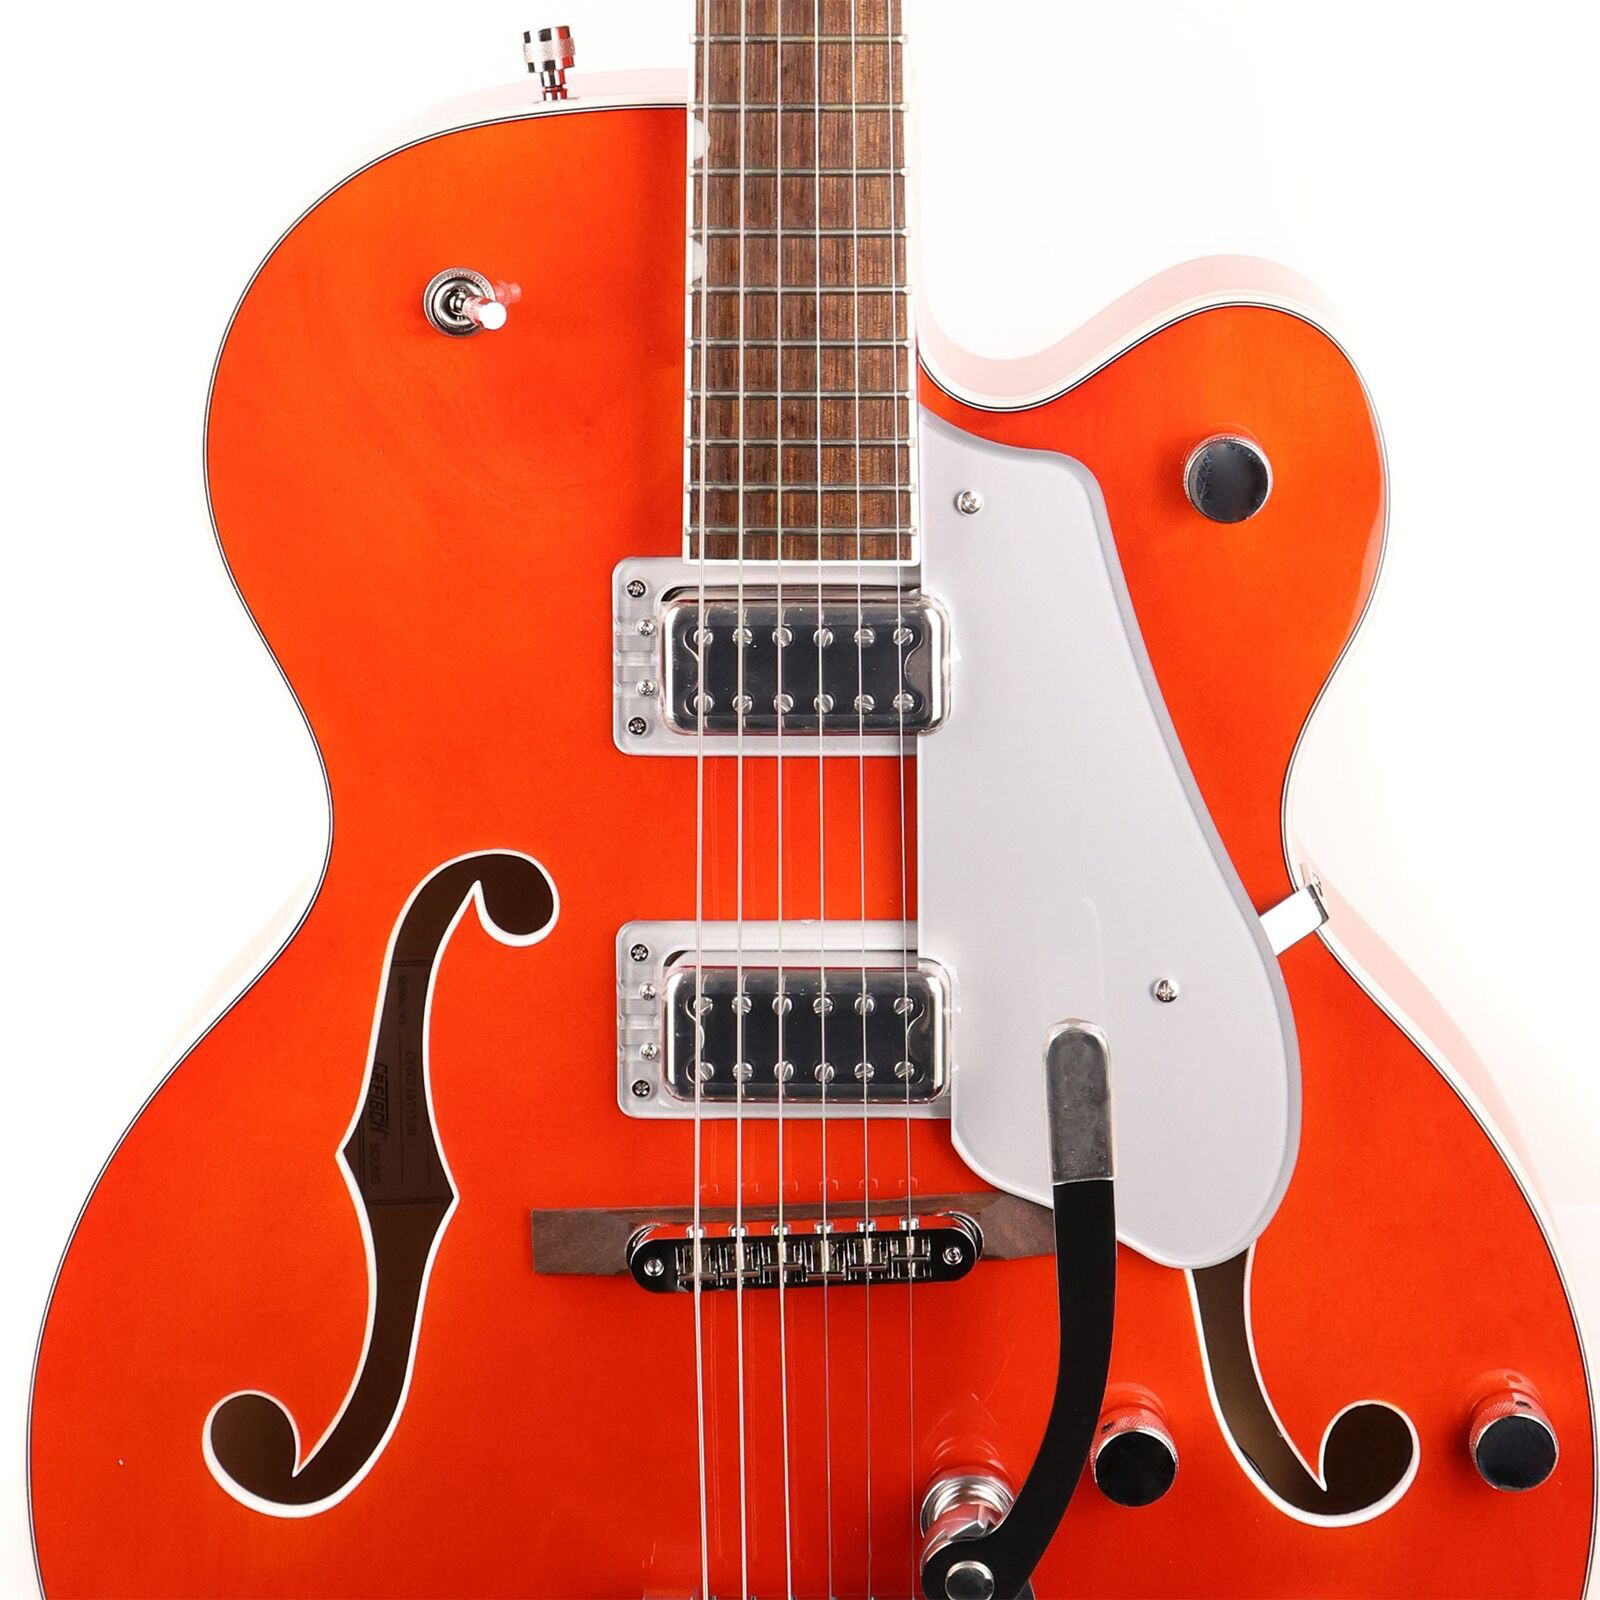 G5420Tエレクトロマティッククラシックホローボディシングルカットオレンジセントエレクトリックギターと同じ写真と同じ